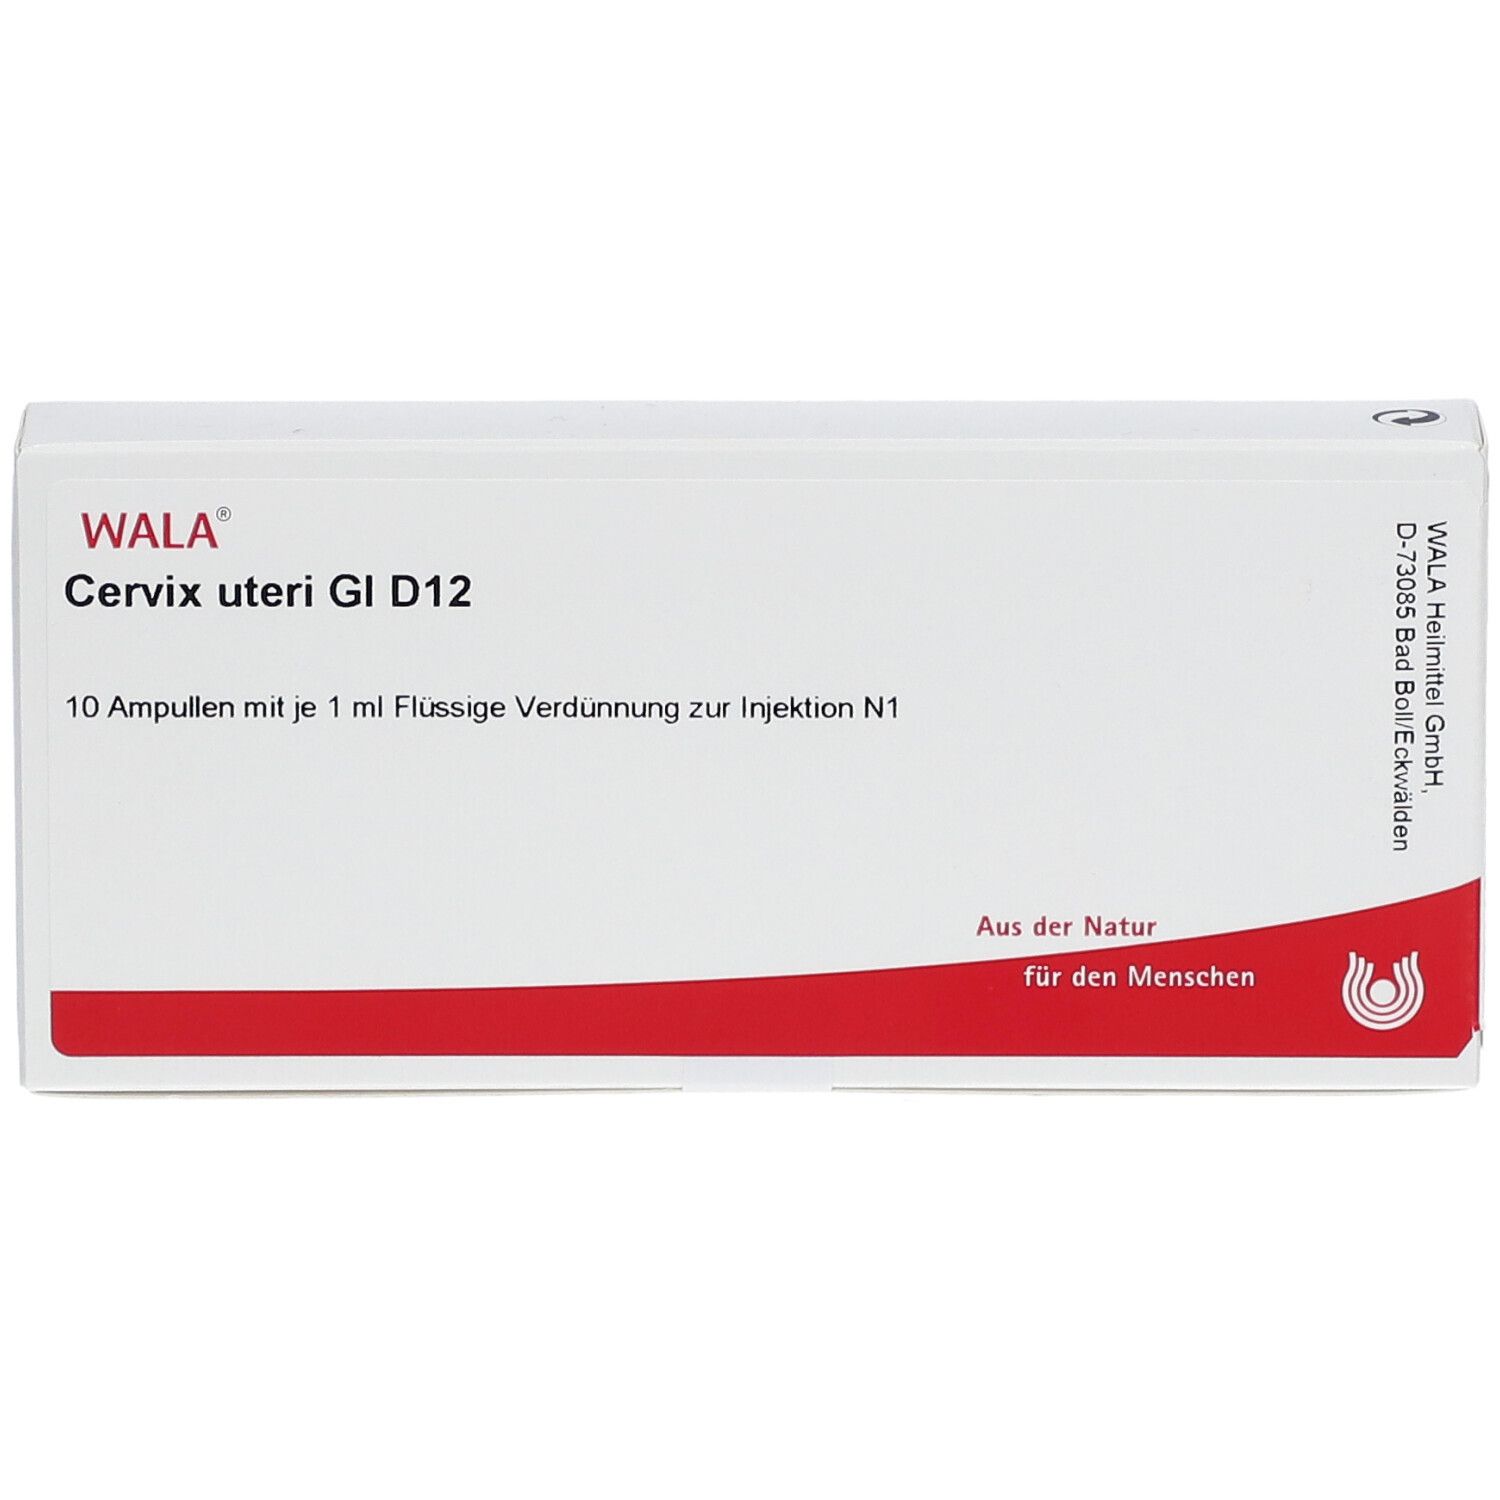 WALA® Cervix uteri Gl D 12